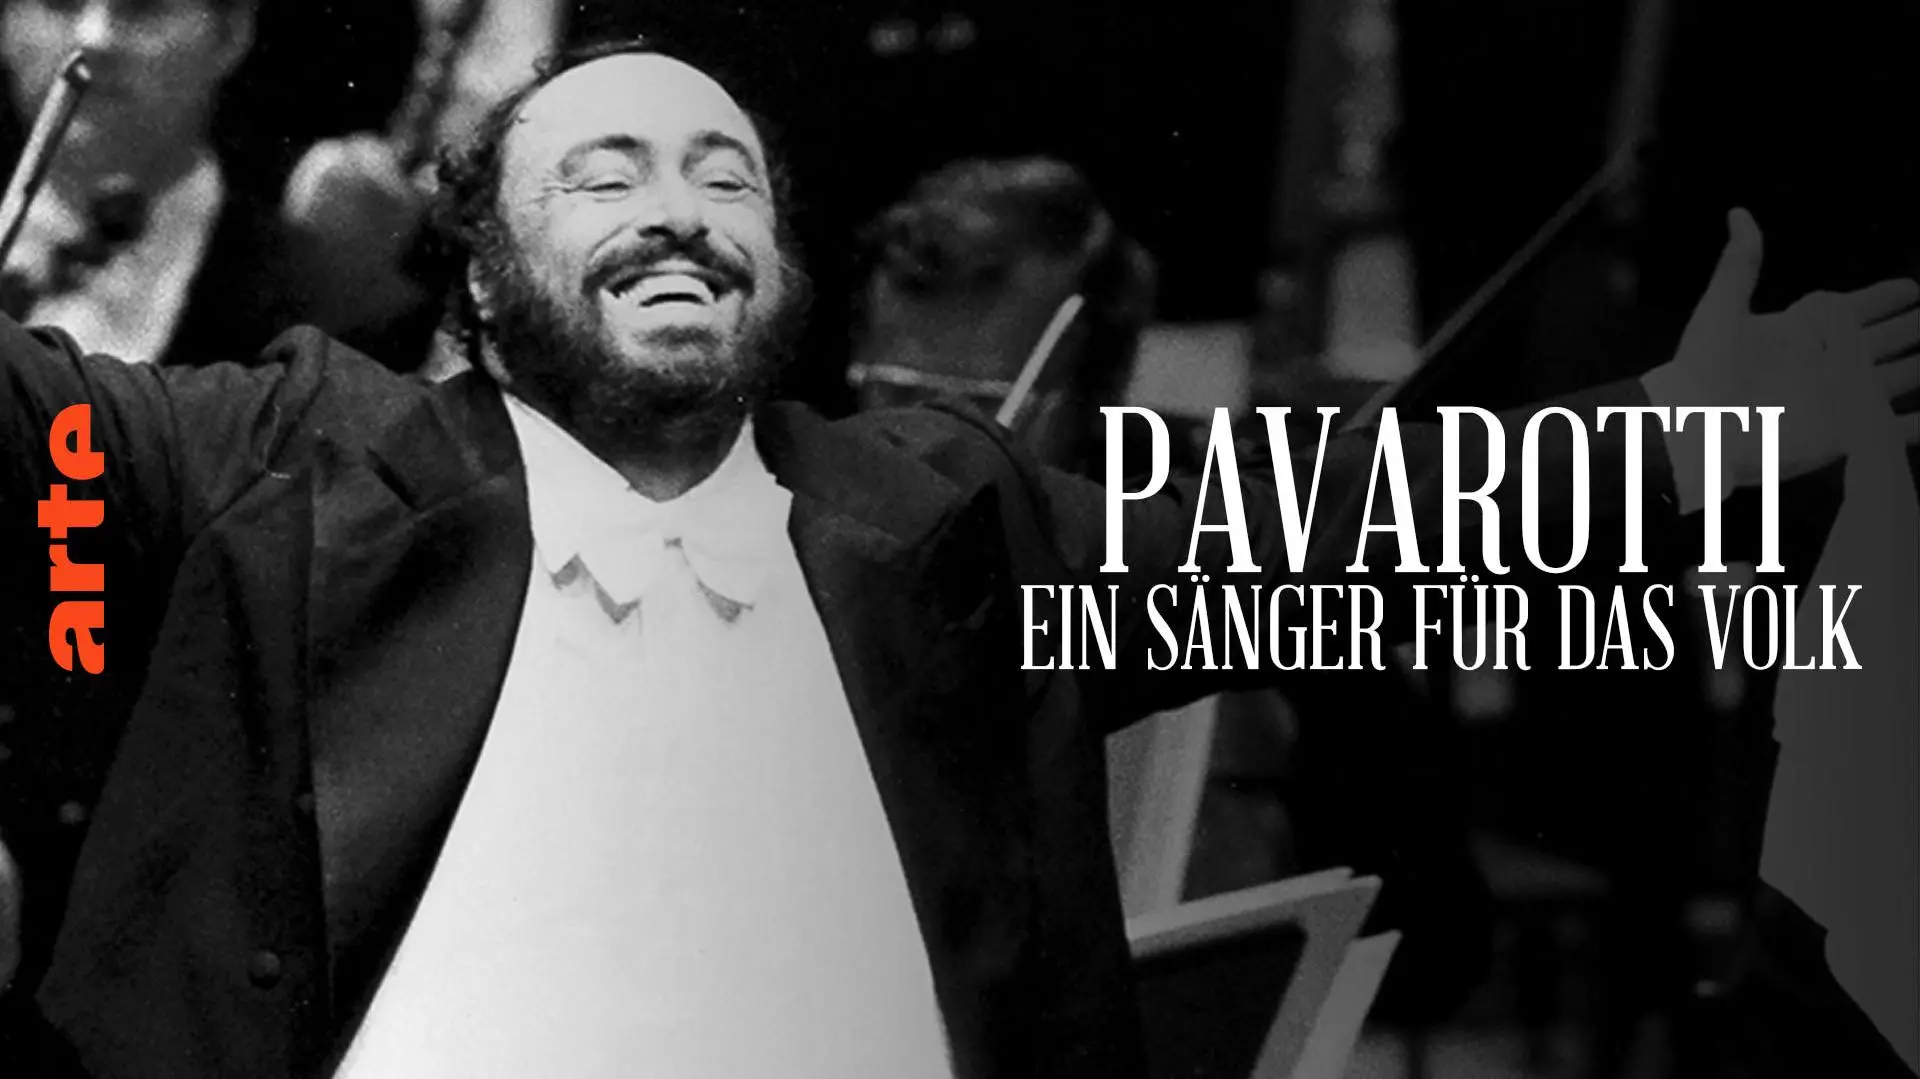 Pavarotti, chanteur populaire_peliplat